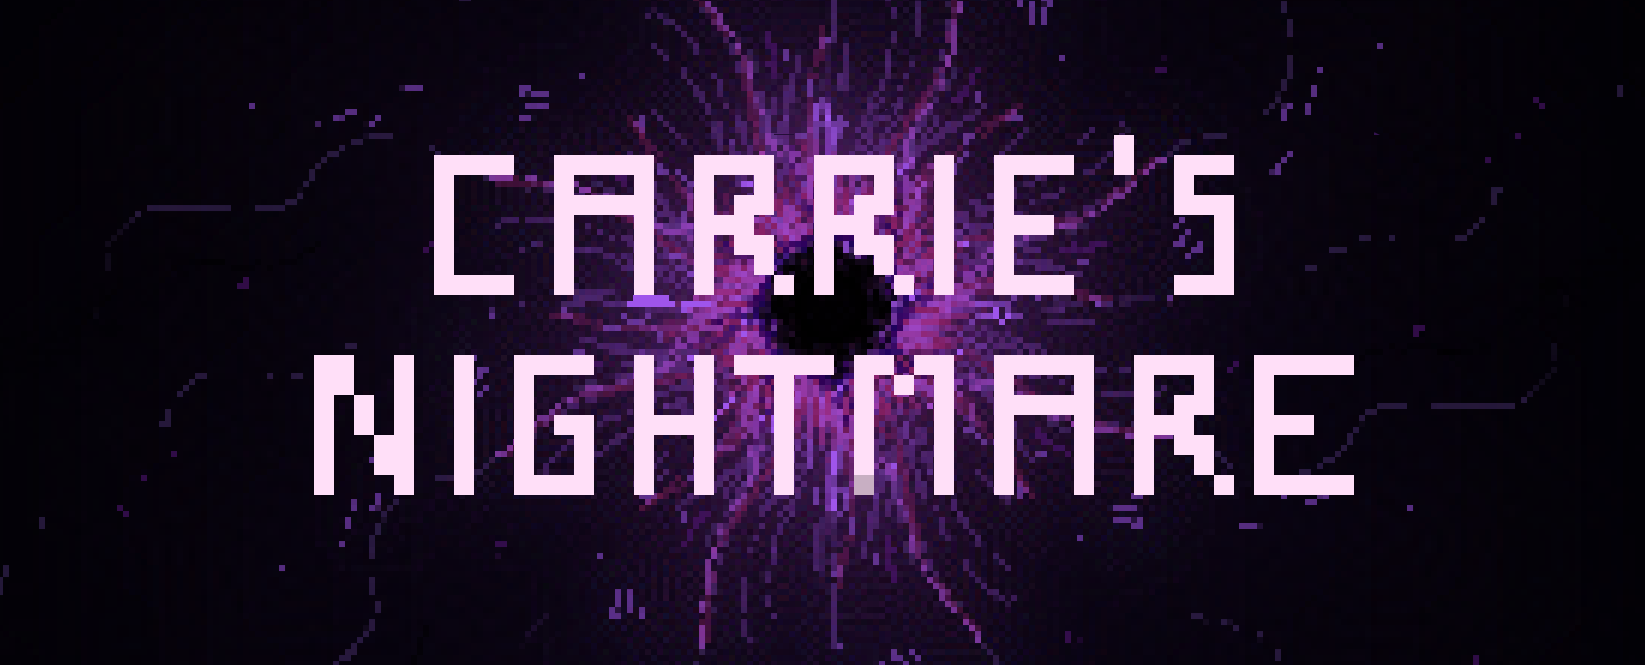 CARRIE'S NIGHTMARE